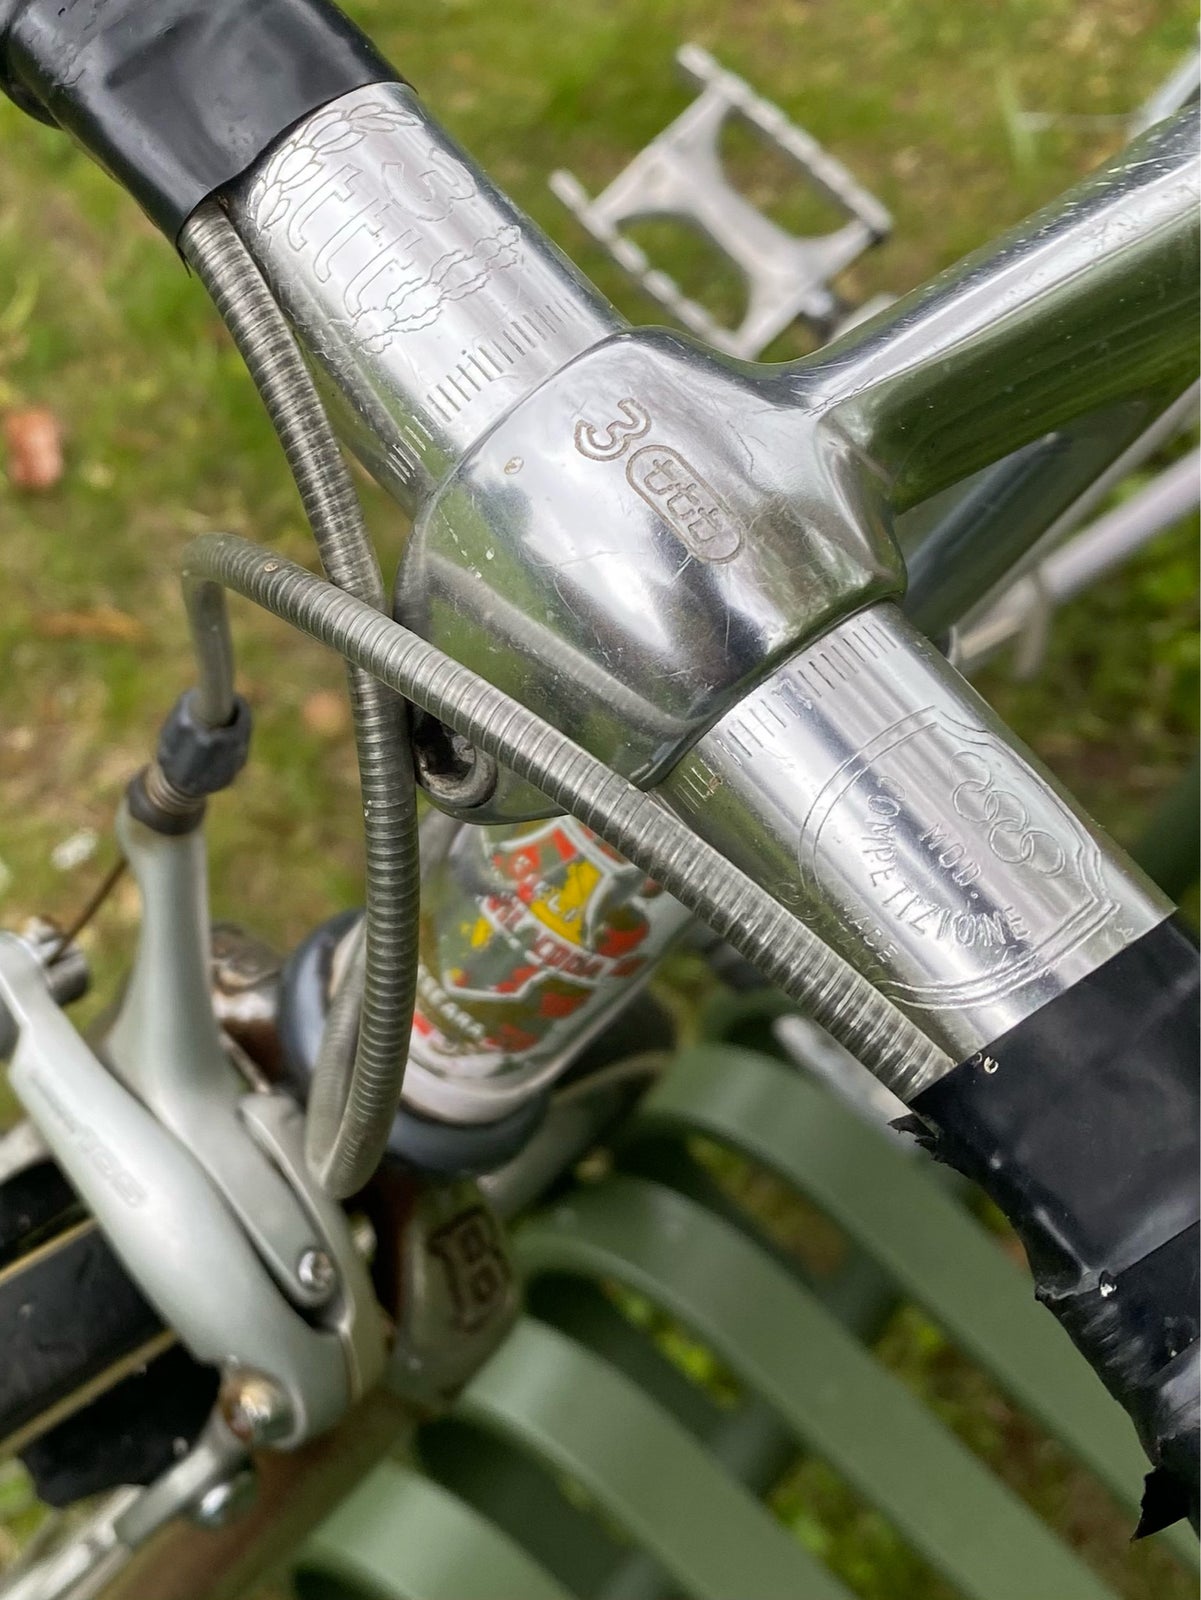 Bevilacqua retro racer cykel